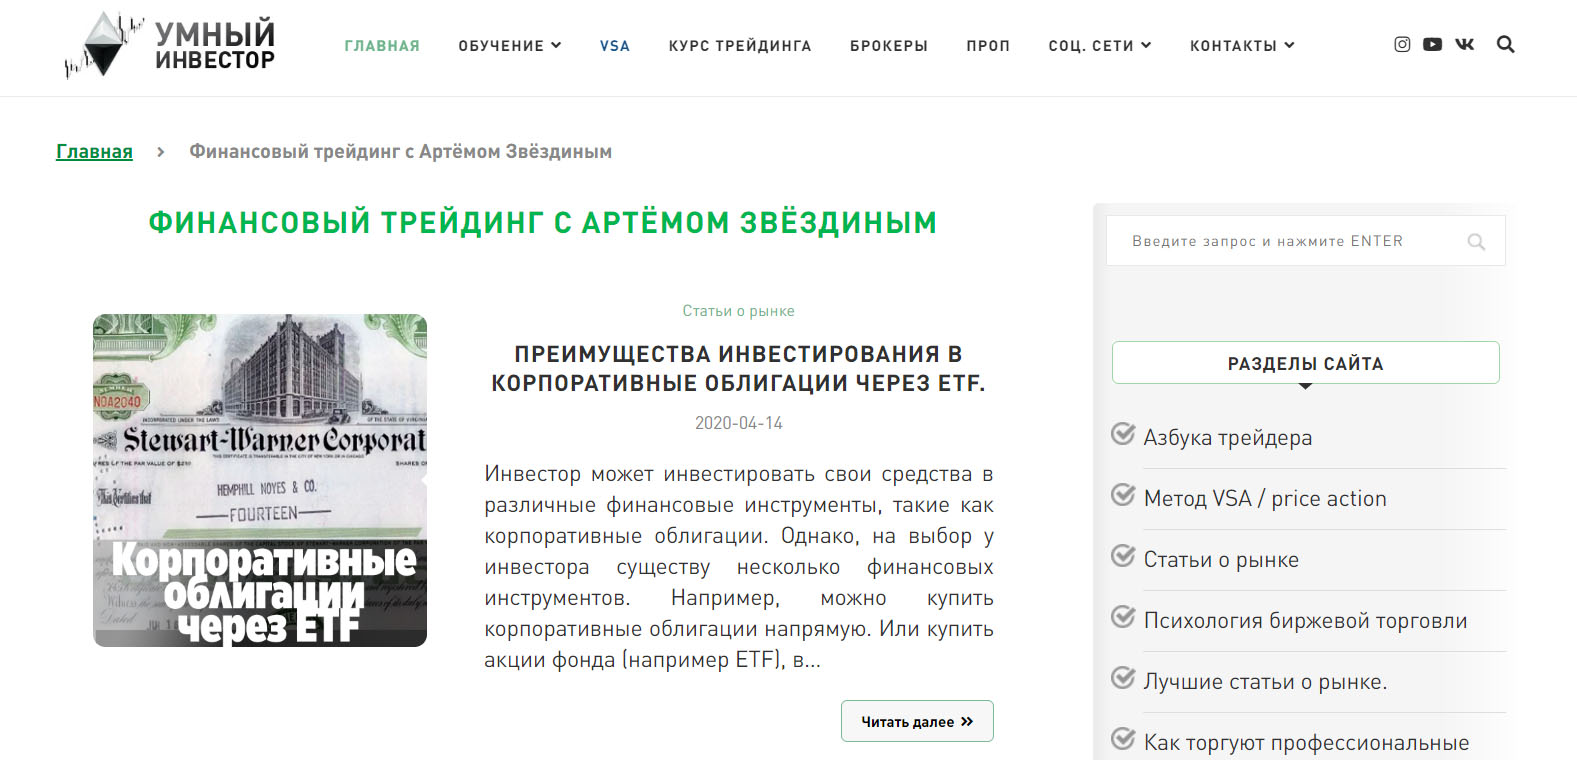 Внешний вид сайта Умный-инвестор.рф